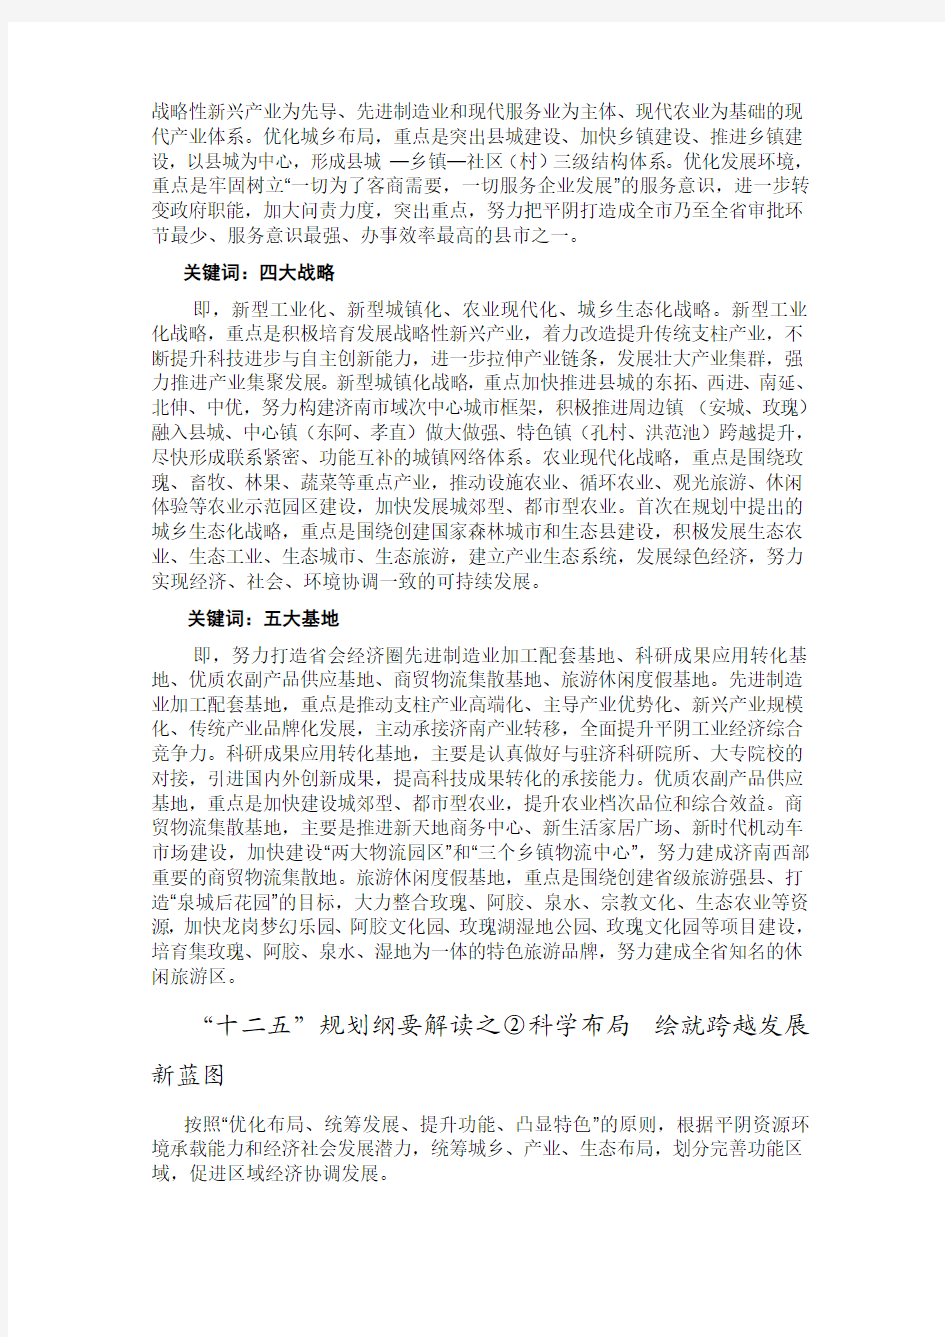 平阴县国民经济和社会发展第十二个五年规划纲要解读